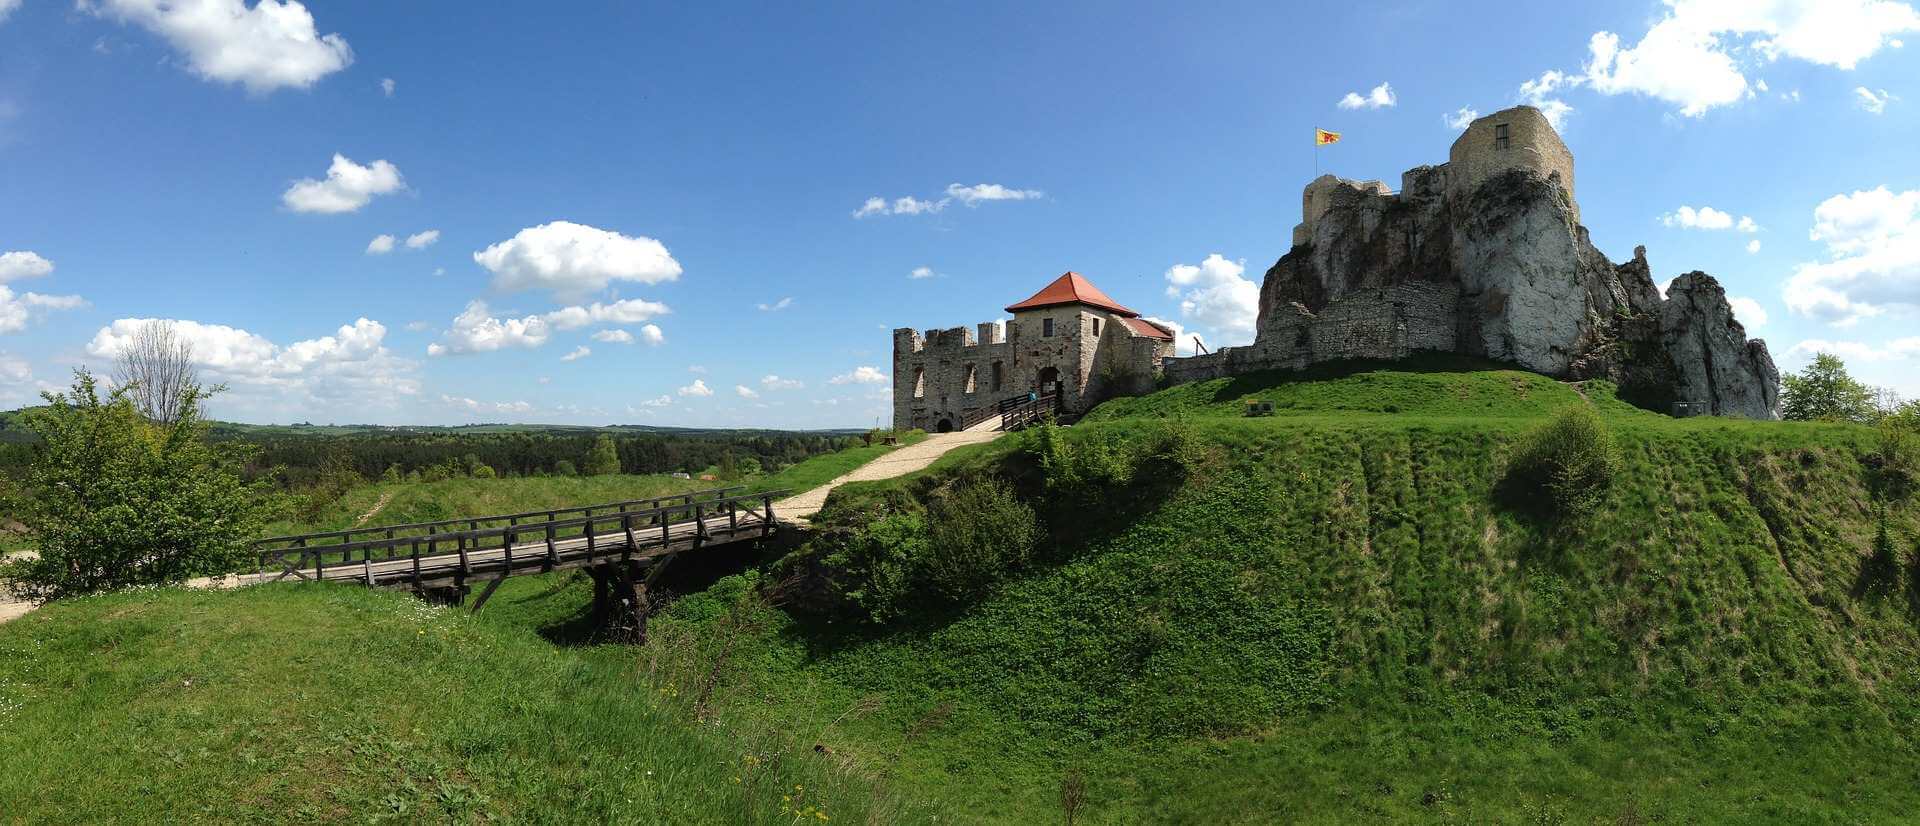 Zamek w Pieskowej Skale - Ojcowski Park Narodowy